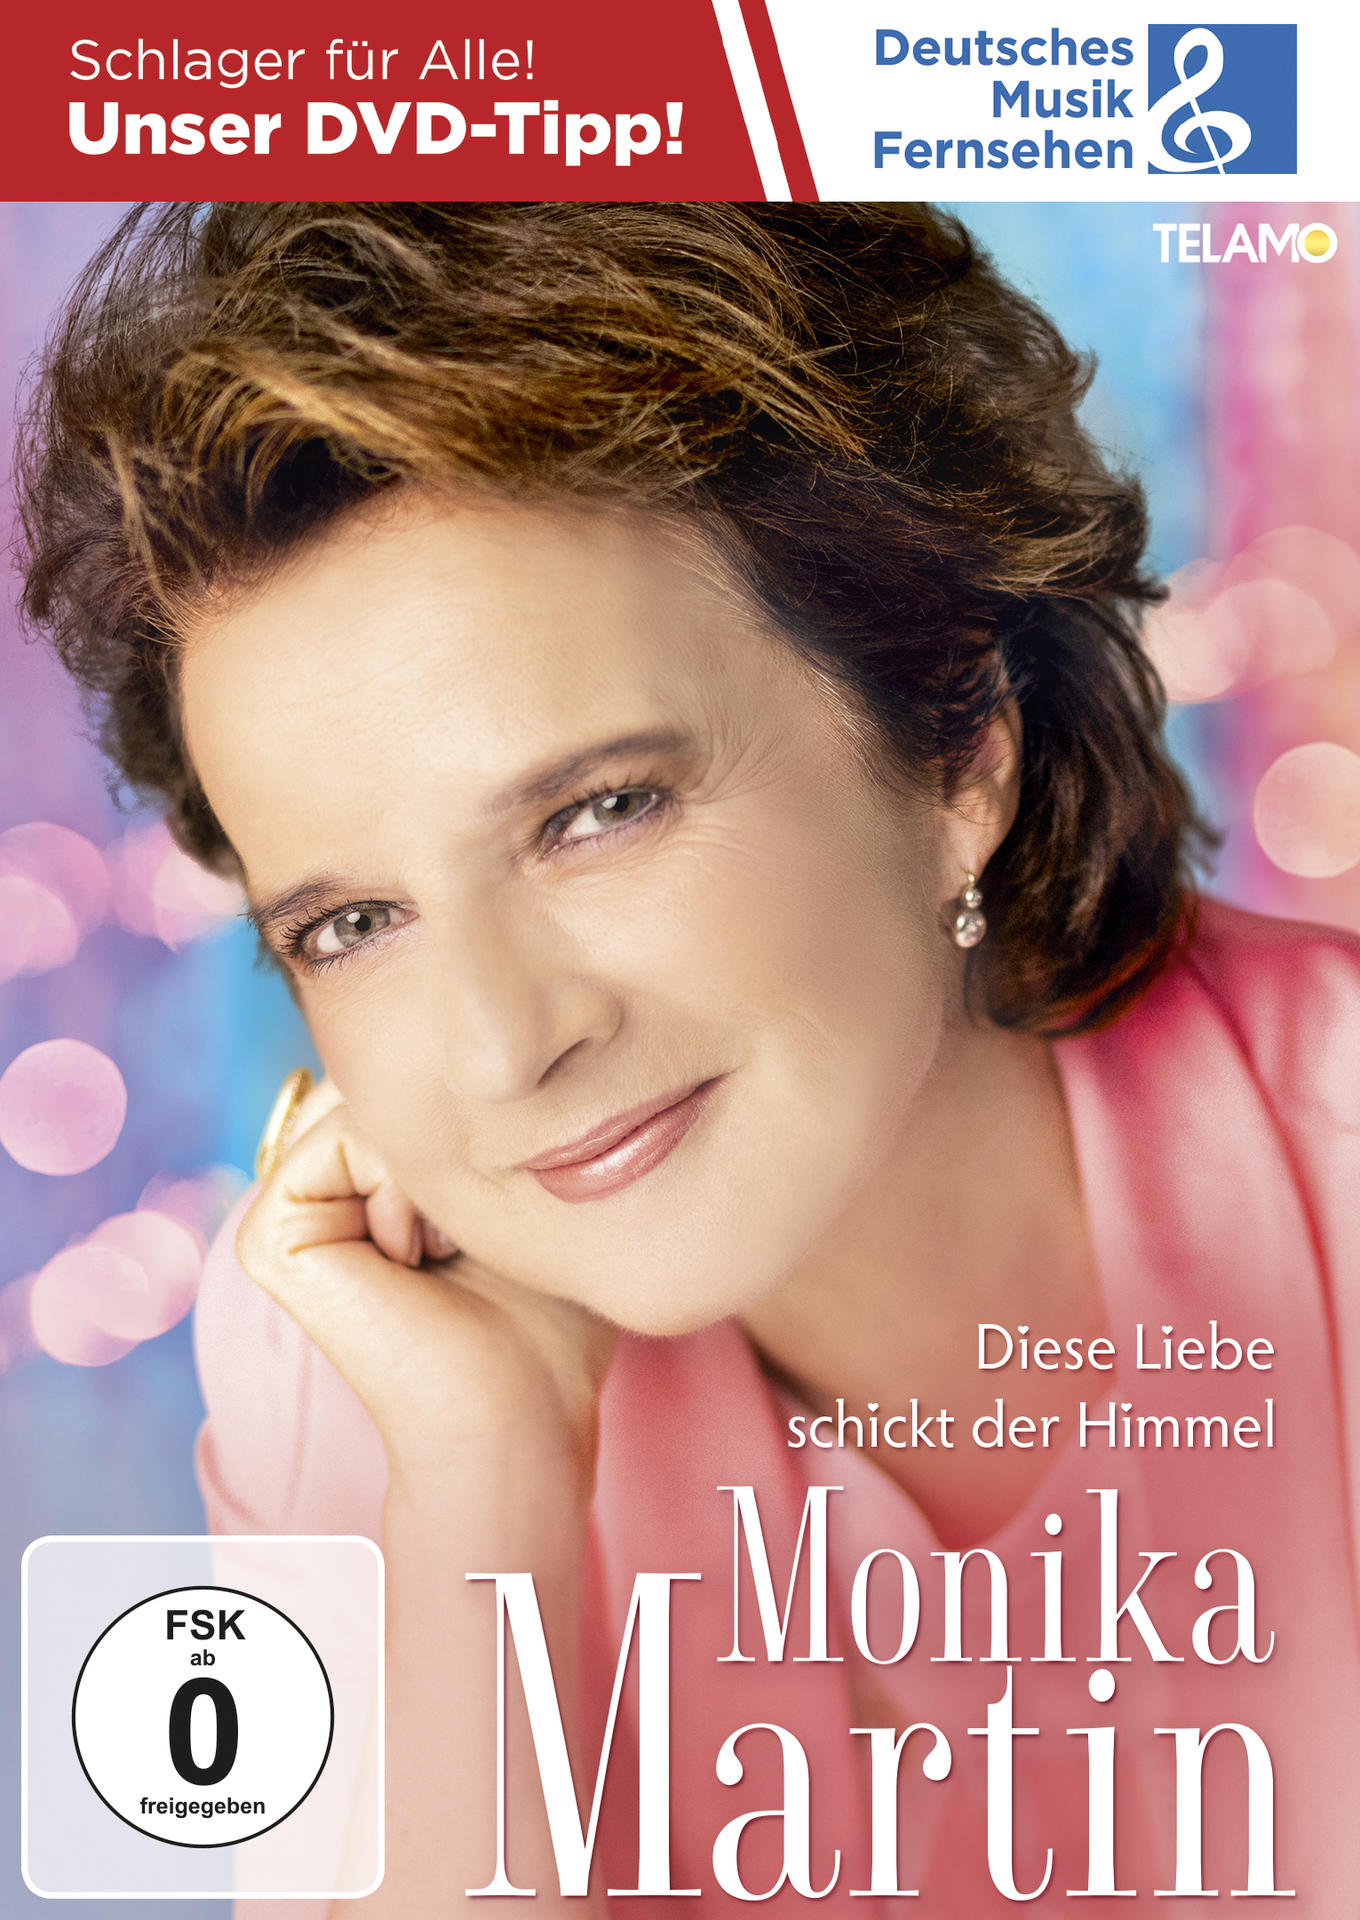 Monika Martin - Diese Liebe Himmel schickt der (DVD) 